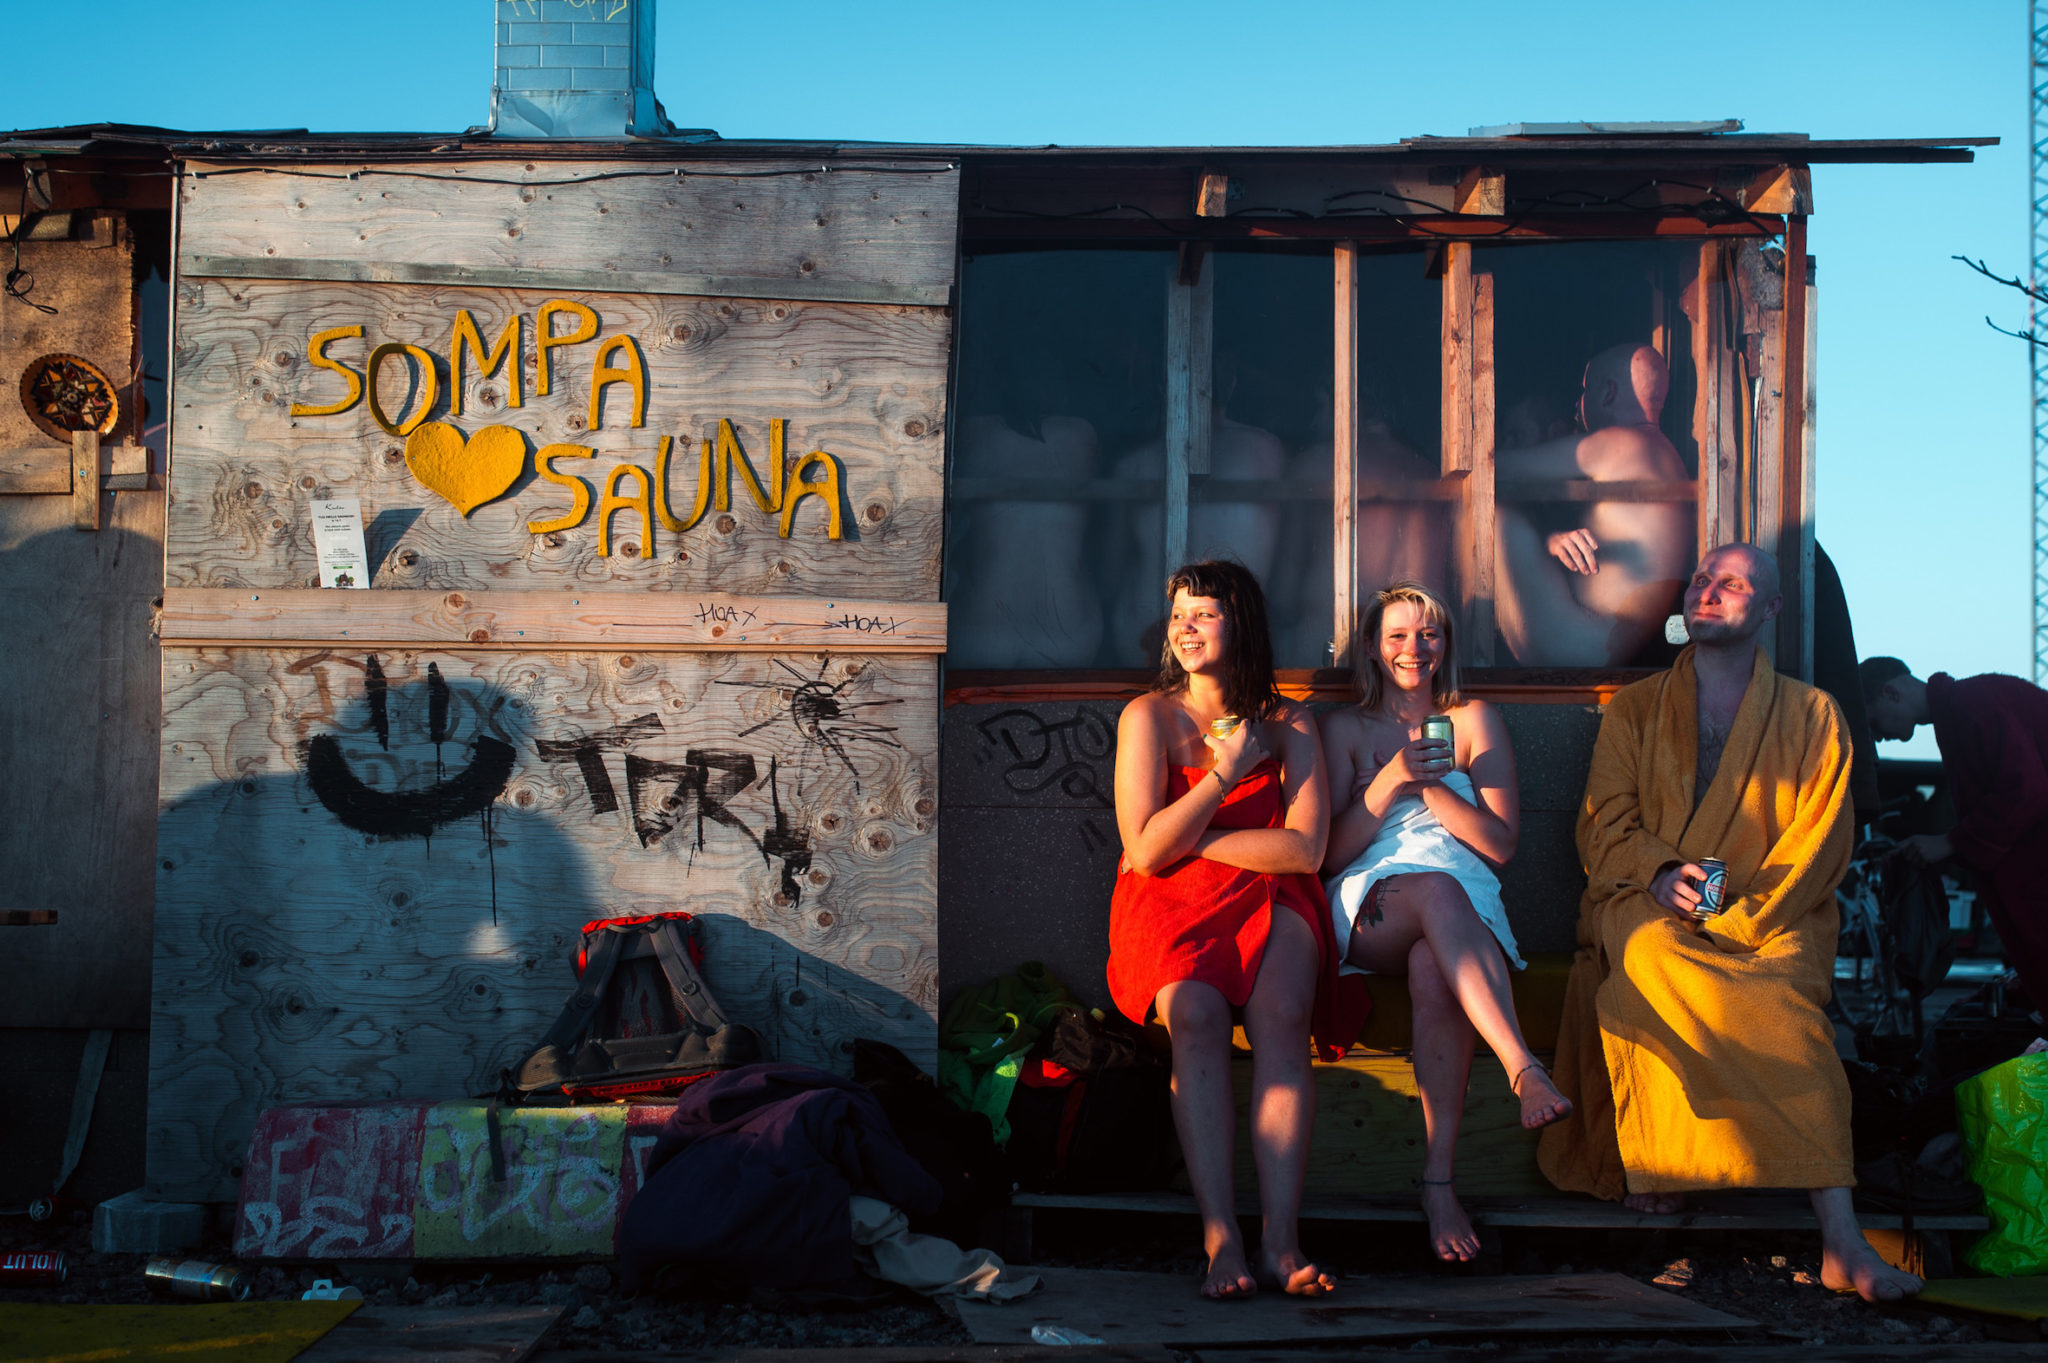 Three people enjoy a drink outside Sompa Sauna in Helsinki, Finland